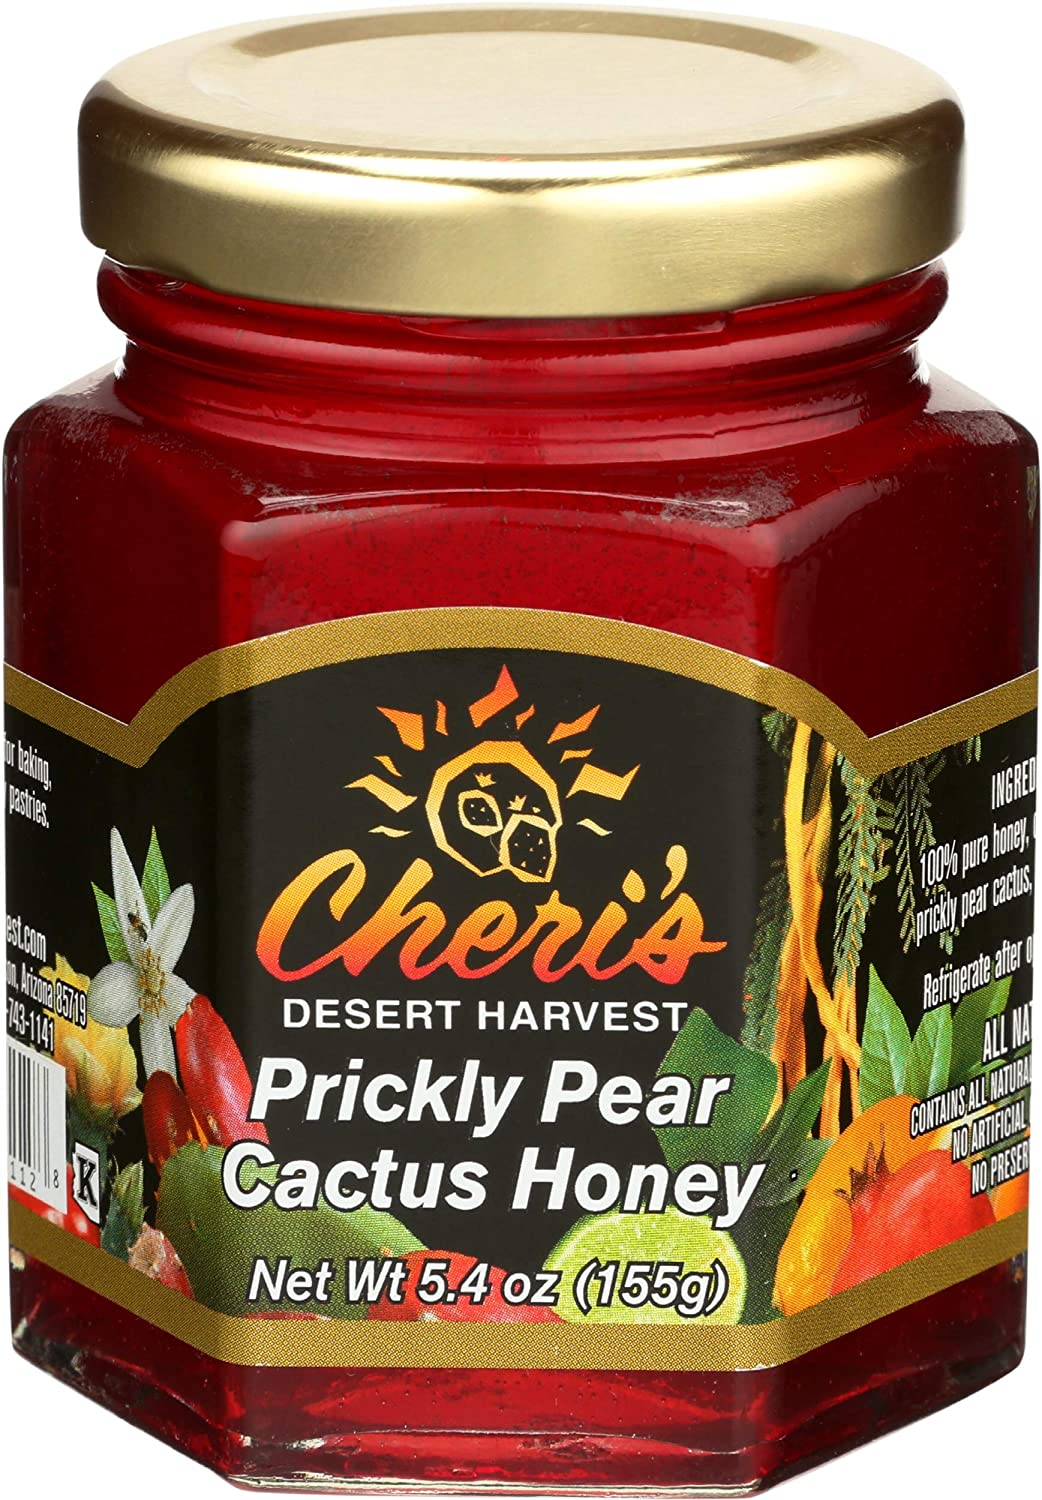 Prickly Pear Cactus Honey 5.4 Ounce - Cheri's Desert Harvest